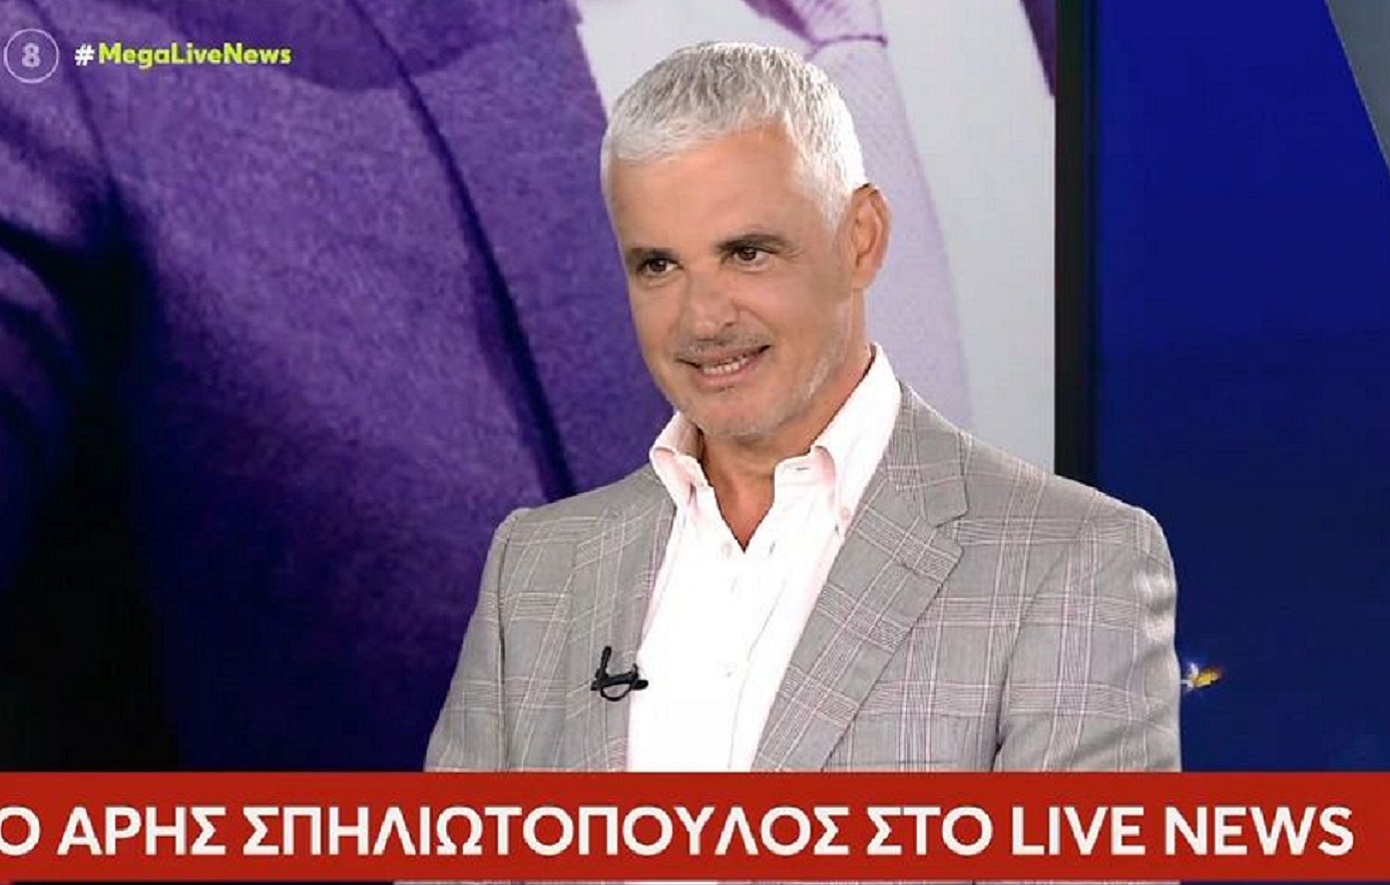 Άρης Σπηλιωτόπουλος: Ο Κασσελάκης δεν χρειάζεται κανέναν να τον συμβουλεύει &#8211; Έχει εμφυτο ταλέντο